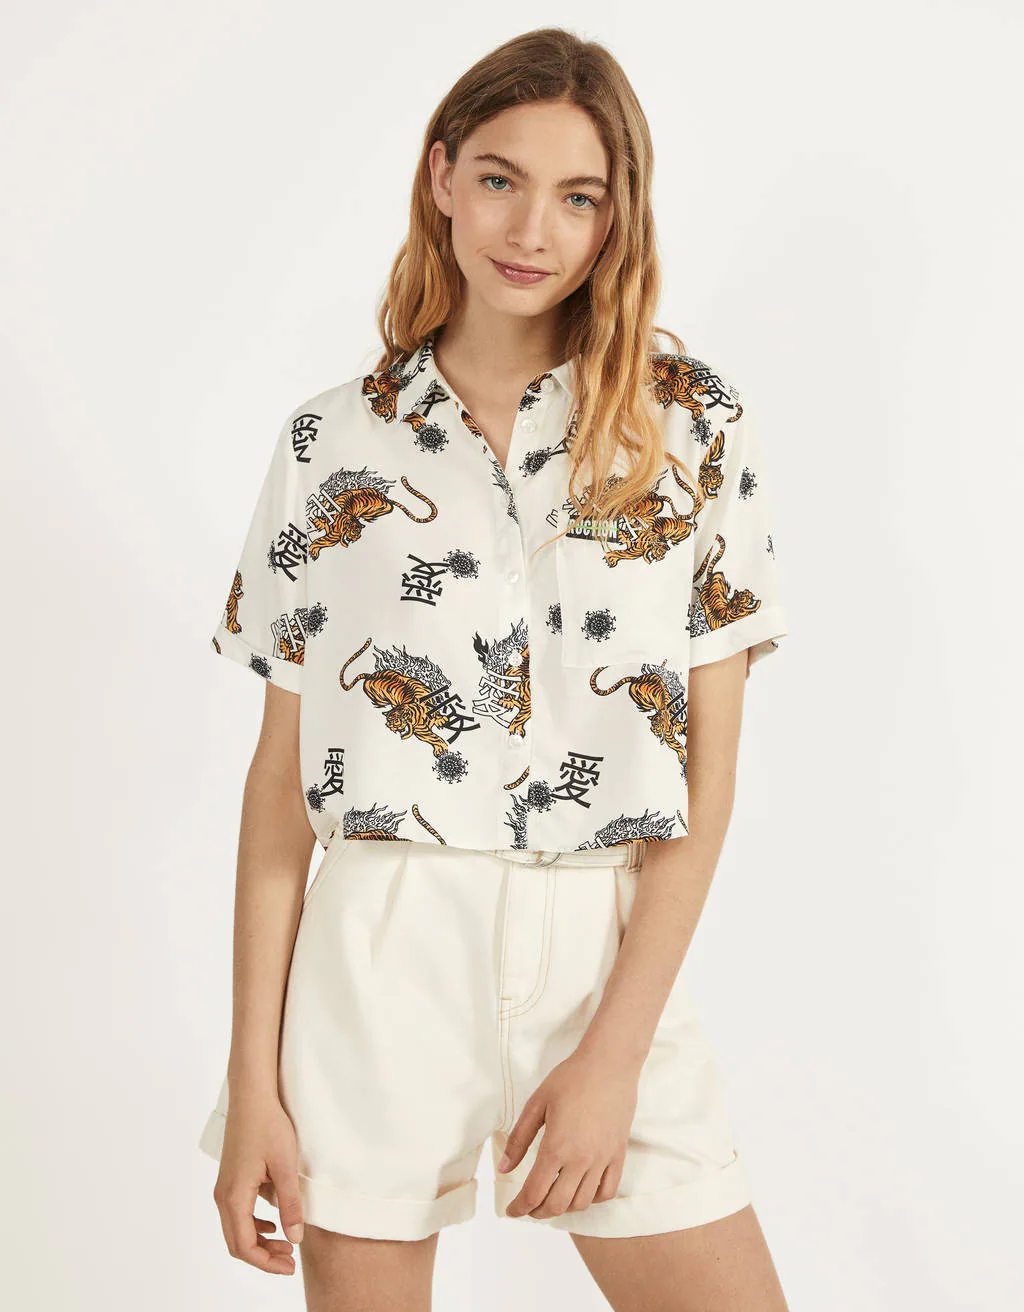 Blusas y camisas baratas para verano: la estampada